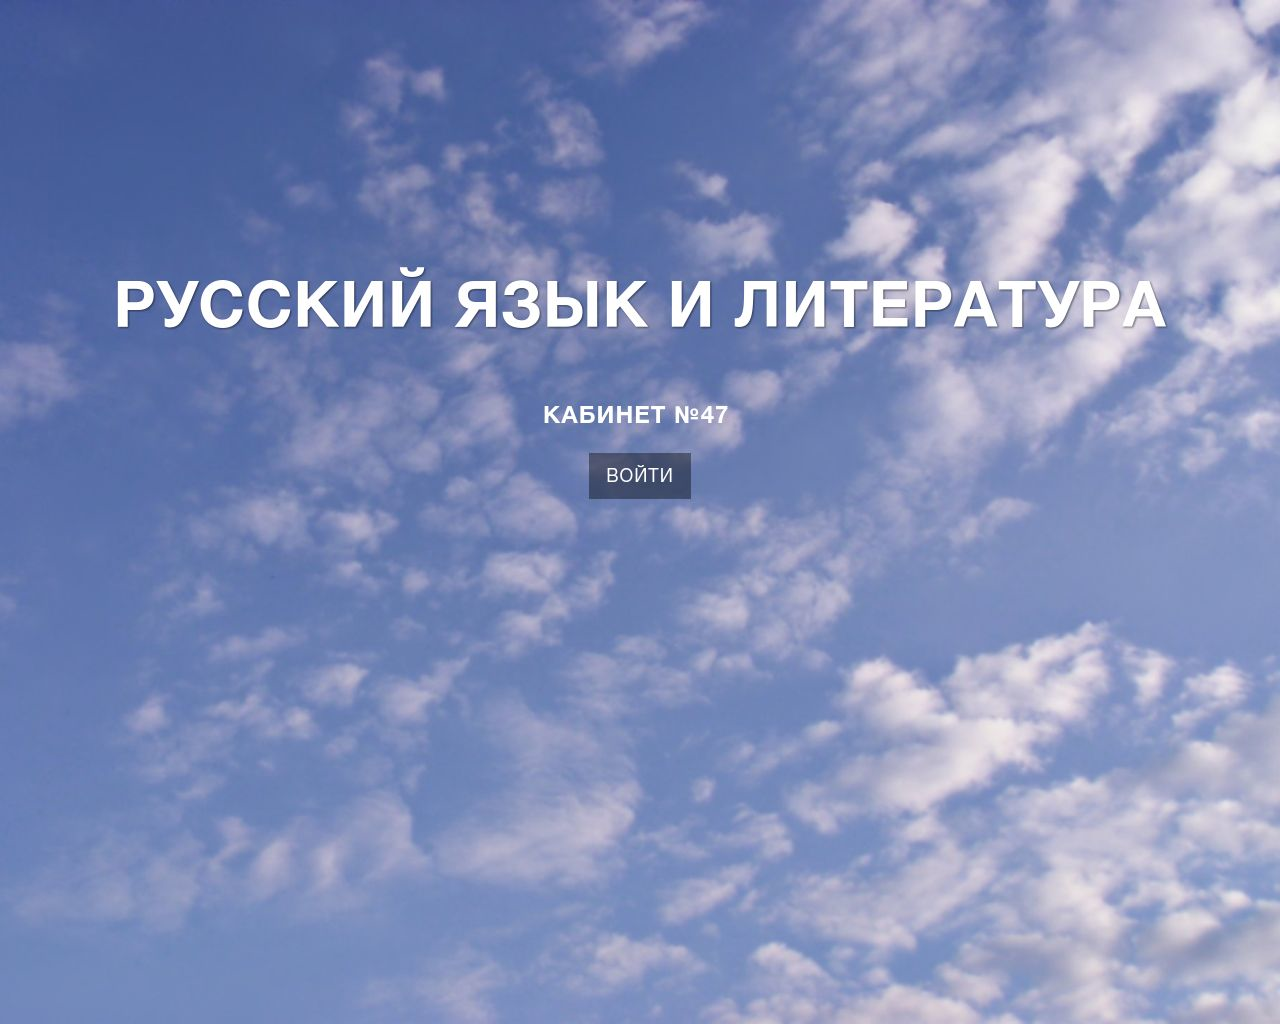 Изображение сайта ruslit47.ru в разрешении 1280x1024